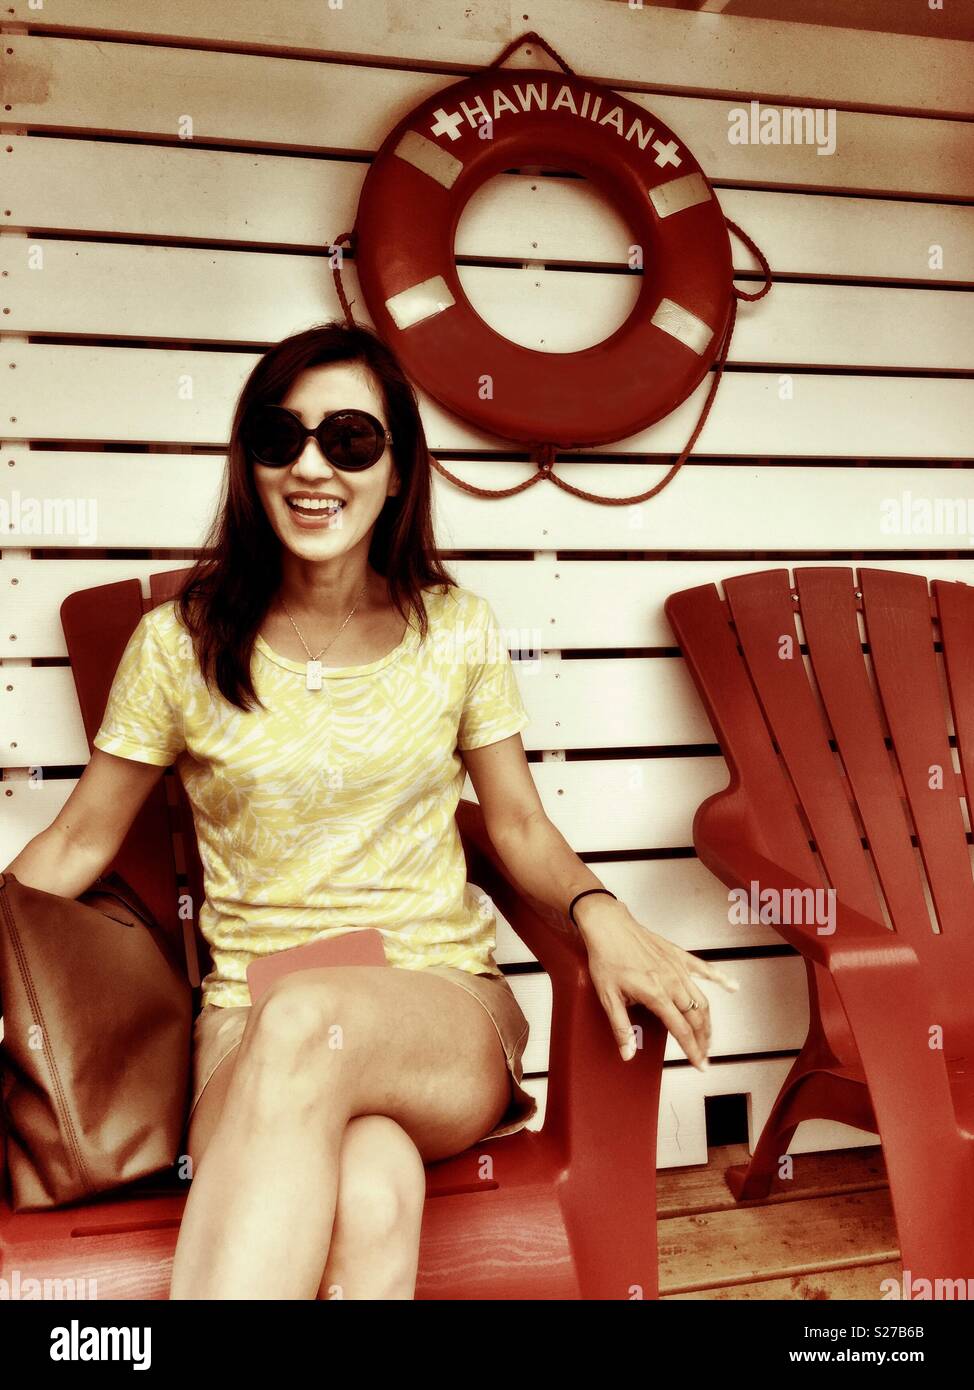 Belle belle jeune femme brune avec des lunettes de soleil et mini shorts  assis sur une chaise Adirondack rouge smiling Photo Stock - Alamy